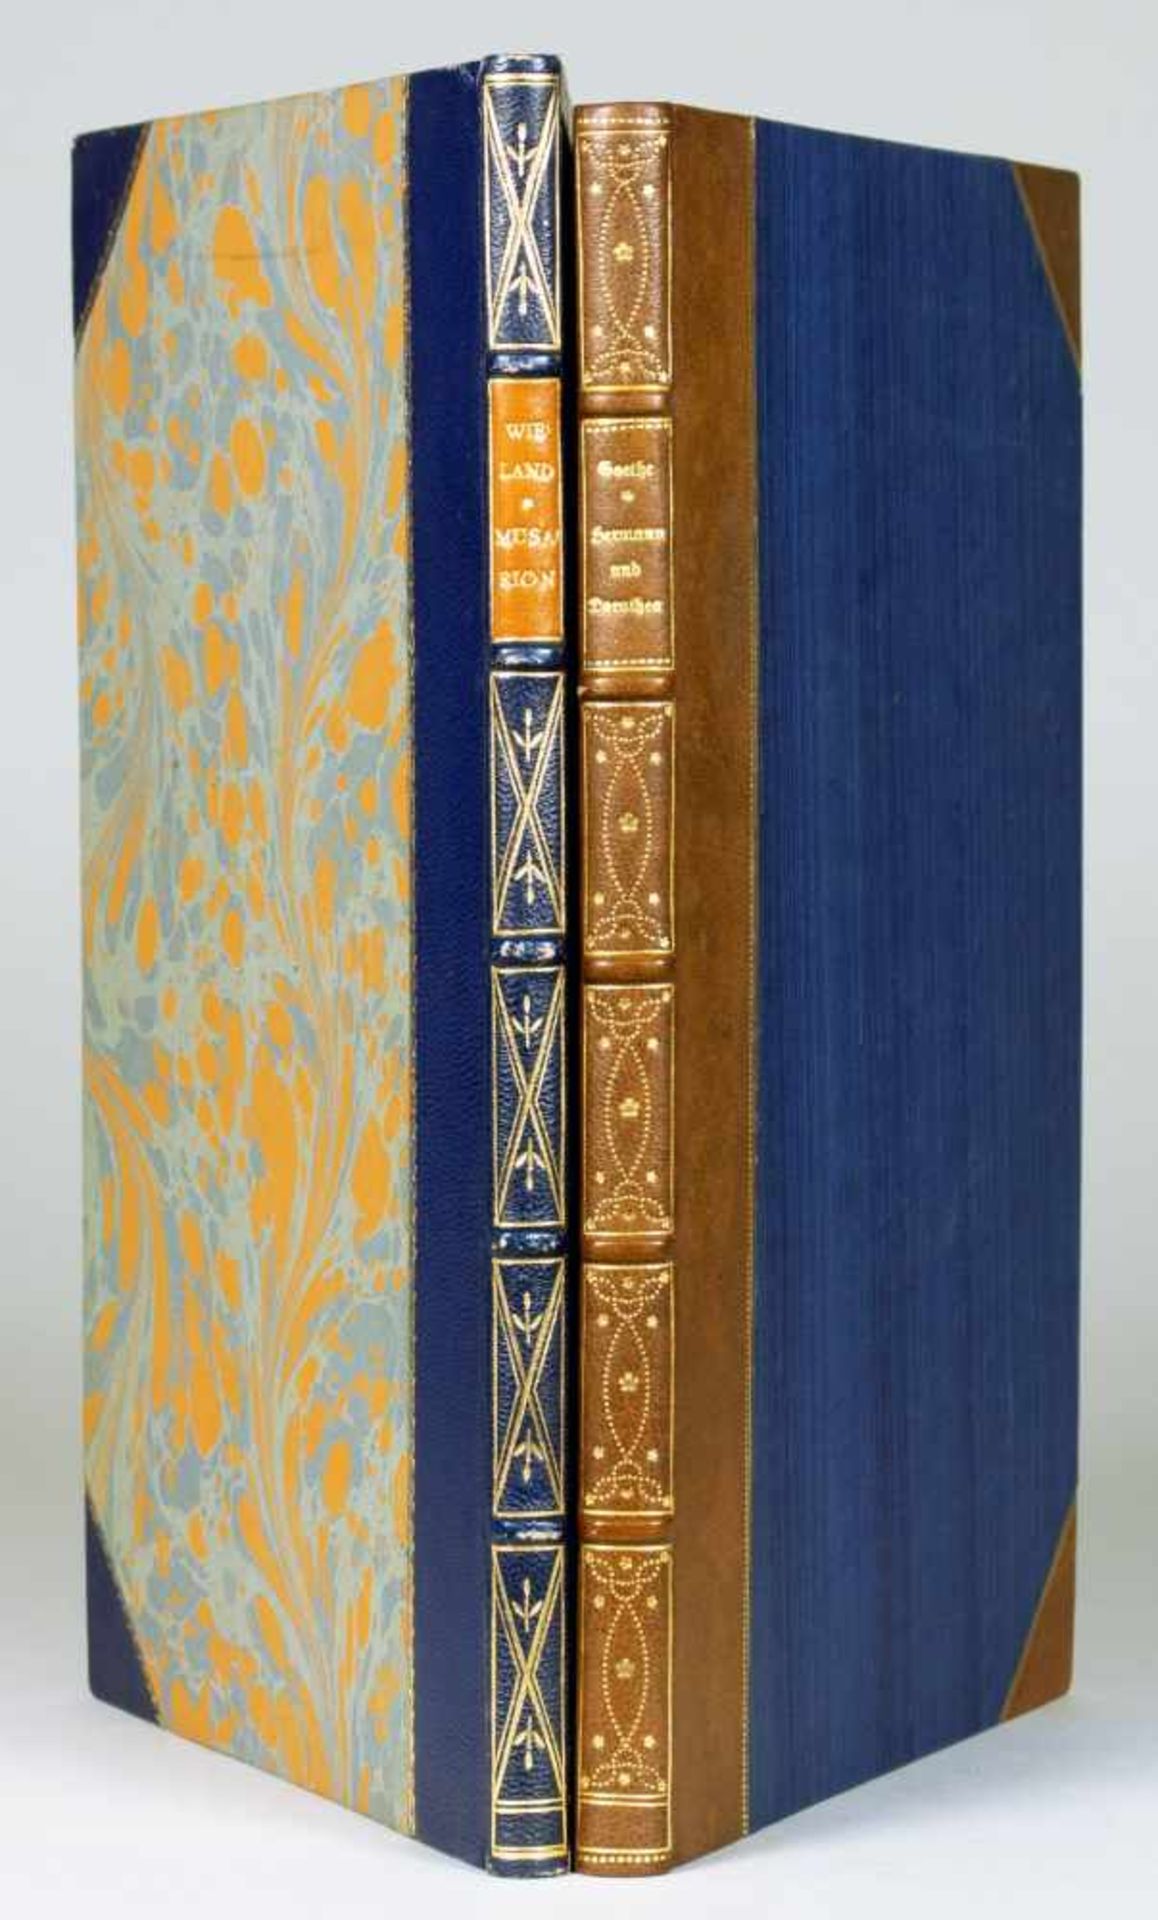 Obelisk-Drucke - Zwei Drucke der Reihe. München, Drei Masken Verlag 1923. Mit zahlreichen